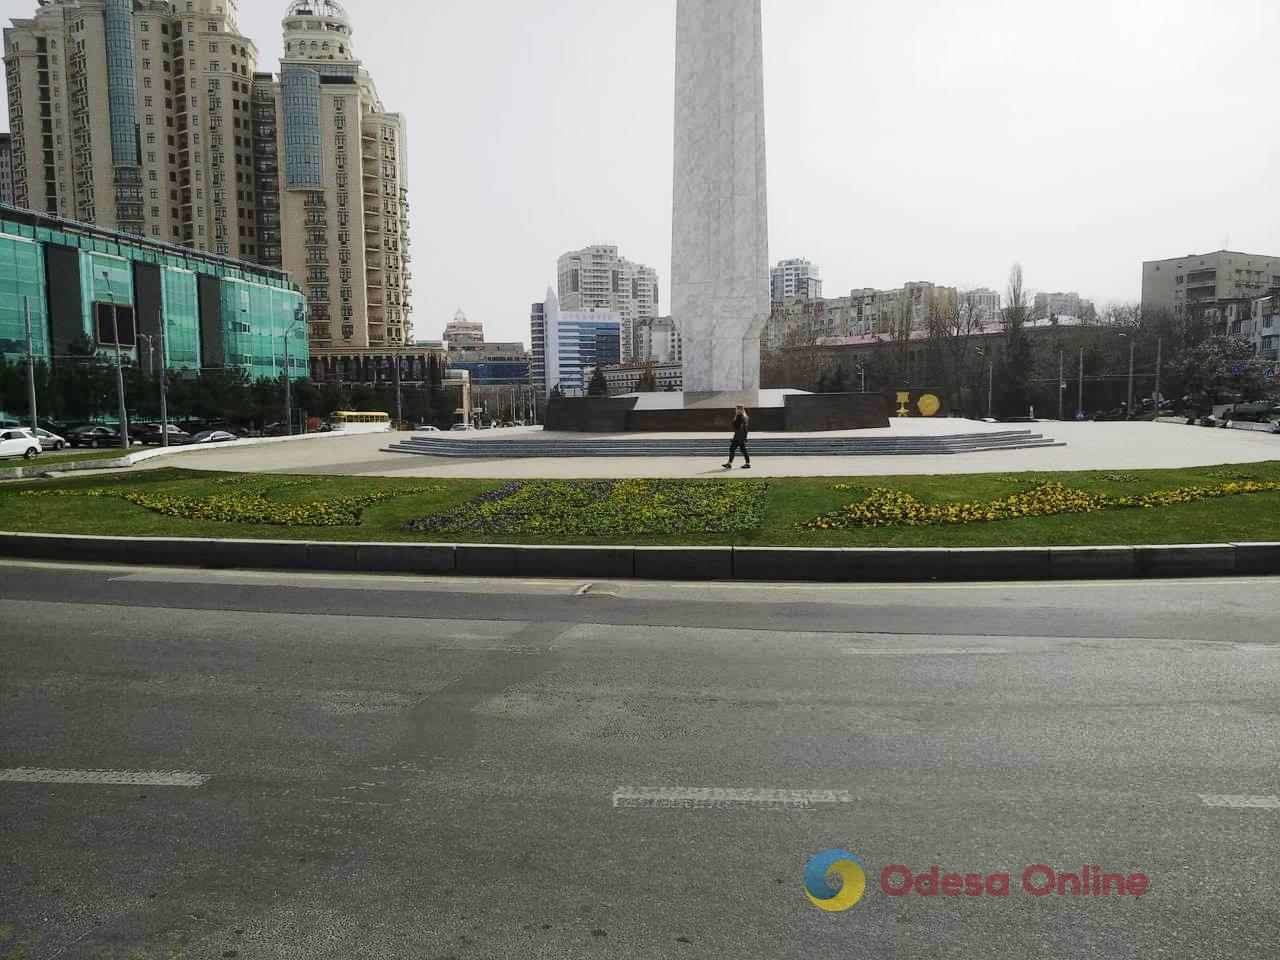 В Одессе начали высаживать весенние цветы (фото)